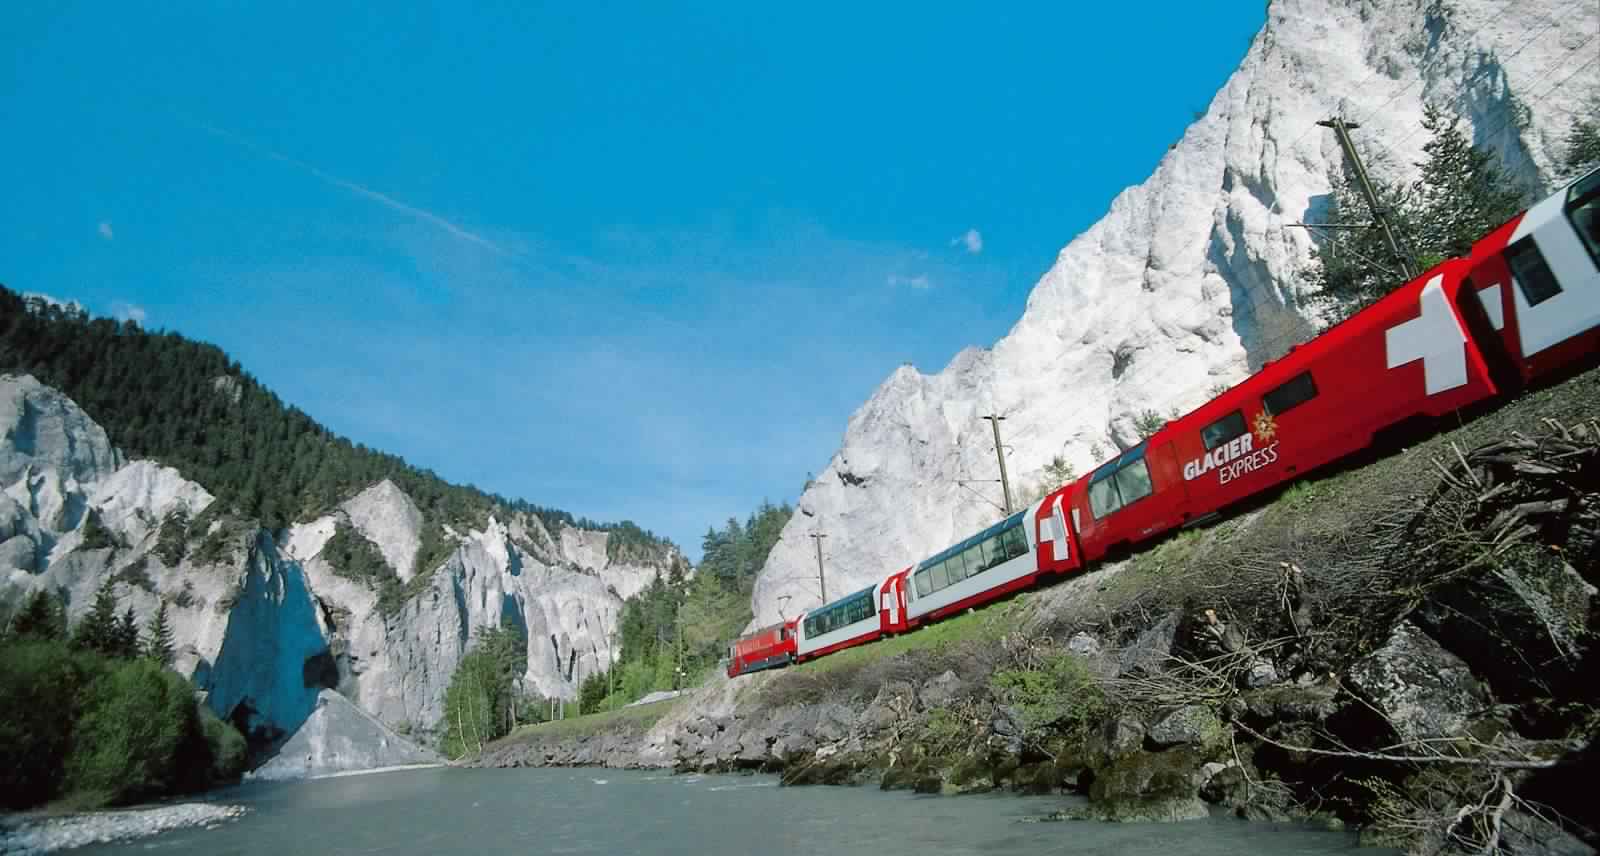 “بالصور” جولة مع قطار جلاسير إكسبريس عبر جبال اﻷلب السويسرية